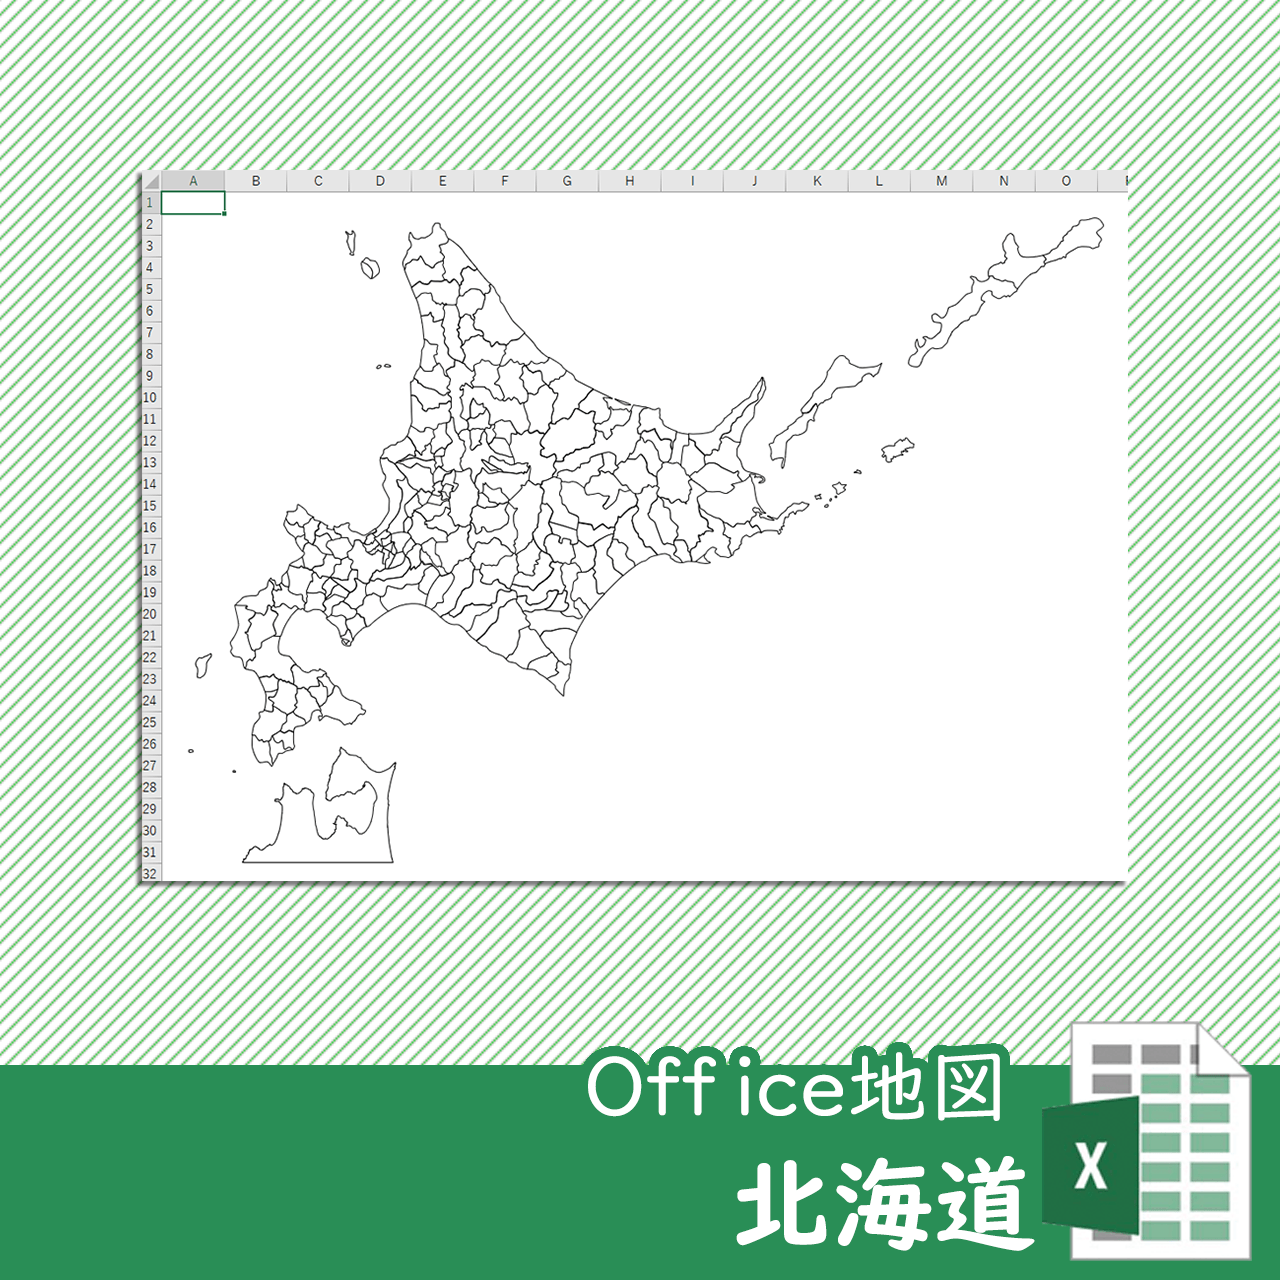 北海道のoffice地図